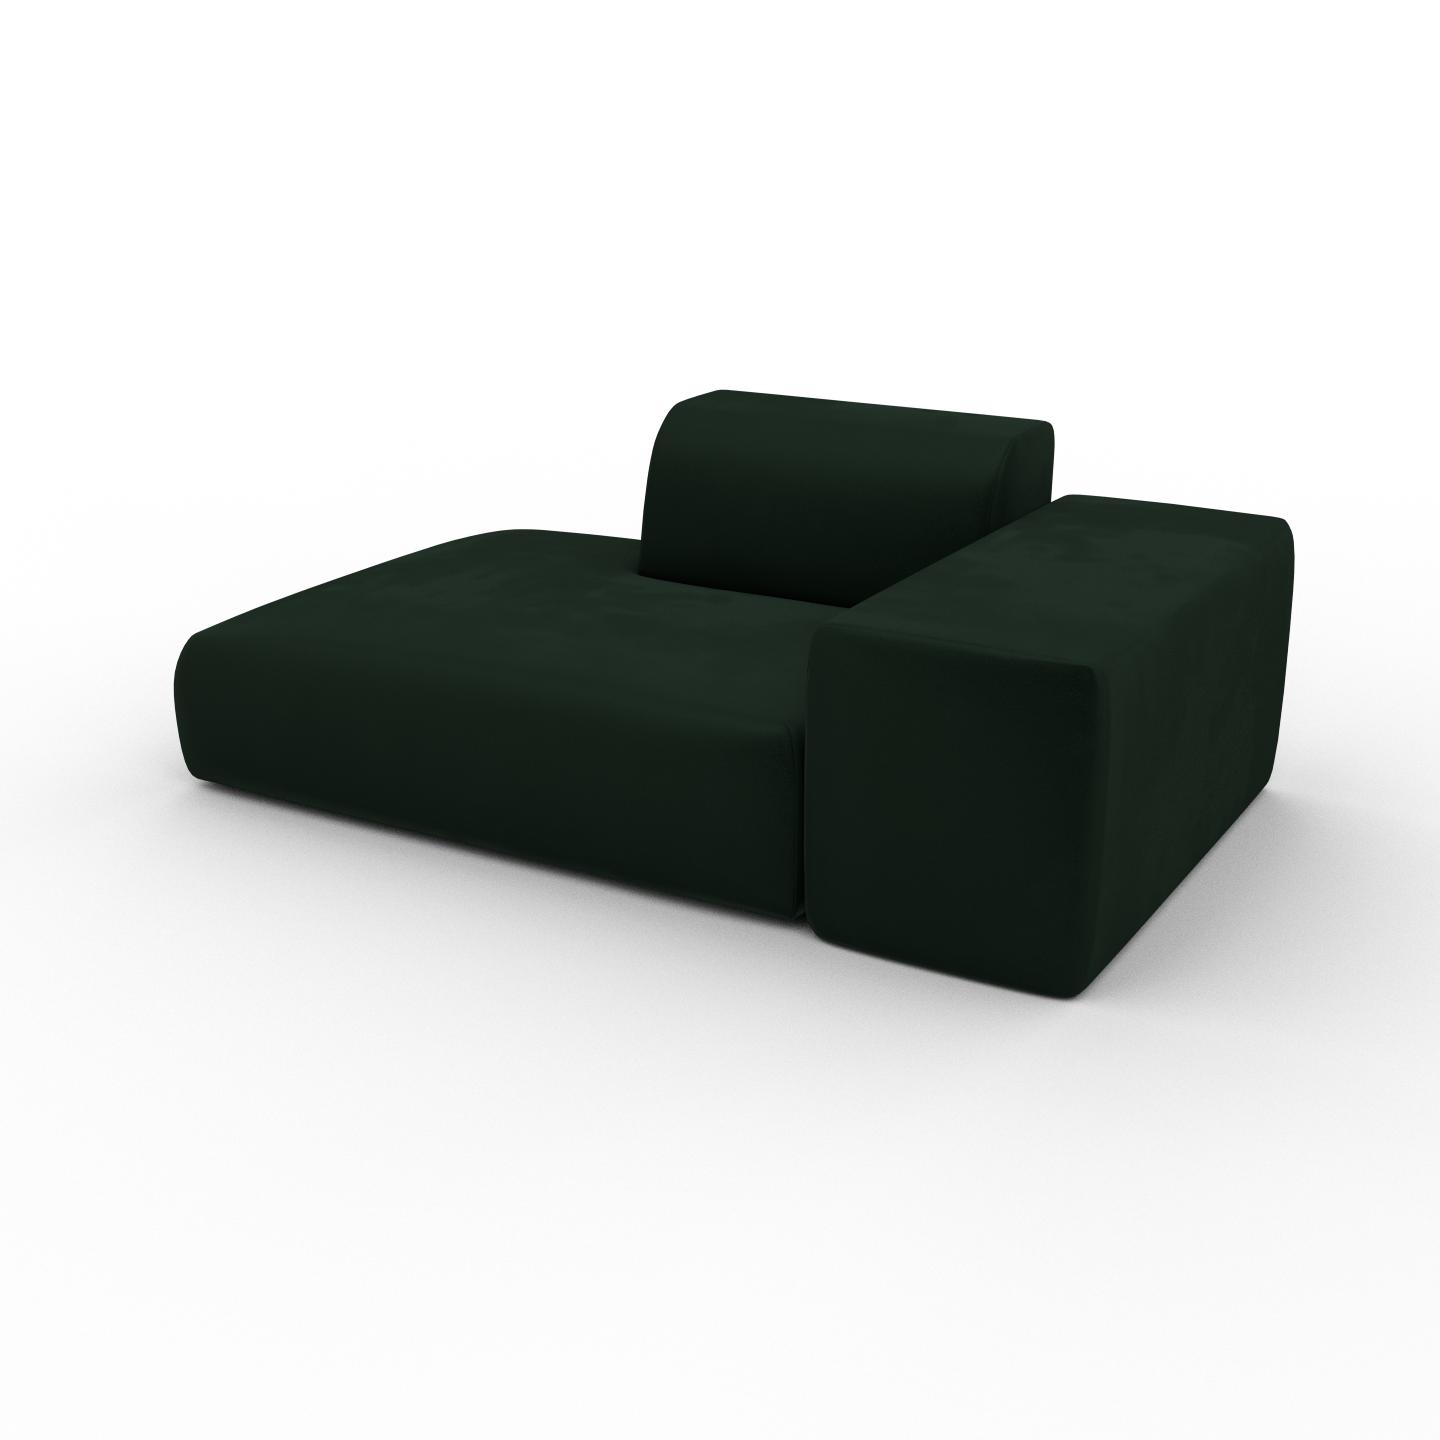 MYCS Canapé Velours - Vert Sapin, forme arrondie, canapé bas et profond pour salon, en tissu sans pieds - 182 x 72 x 107 cm, modulable